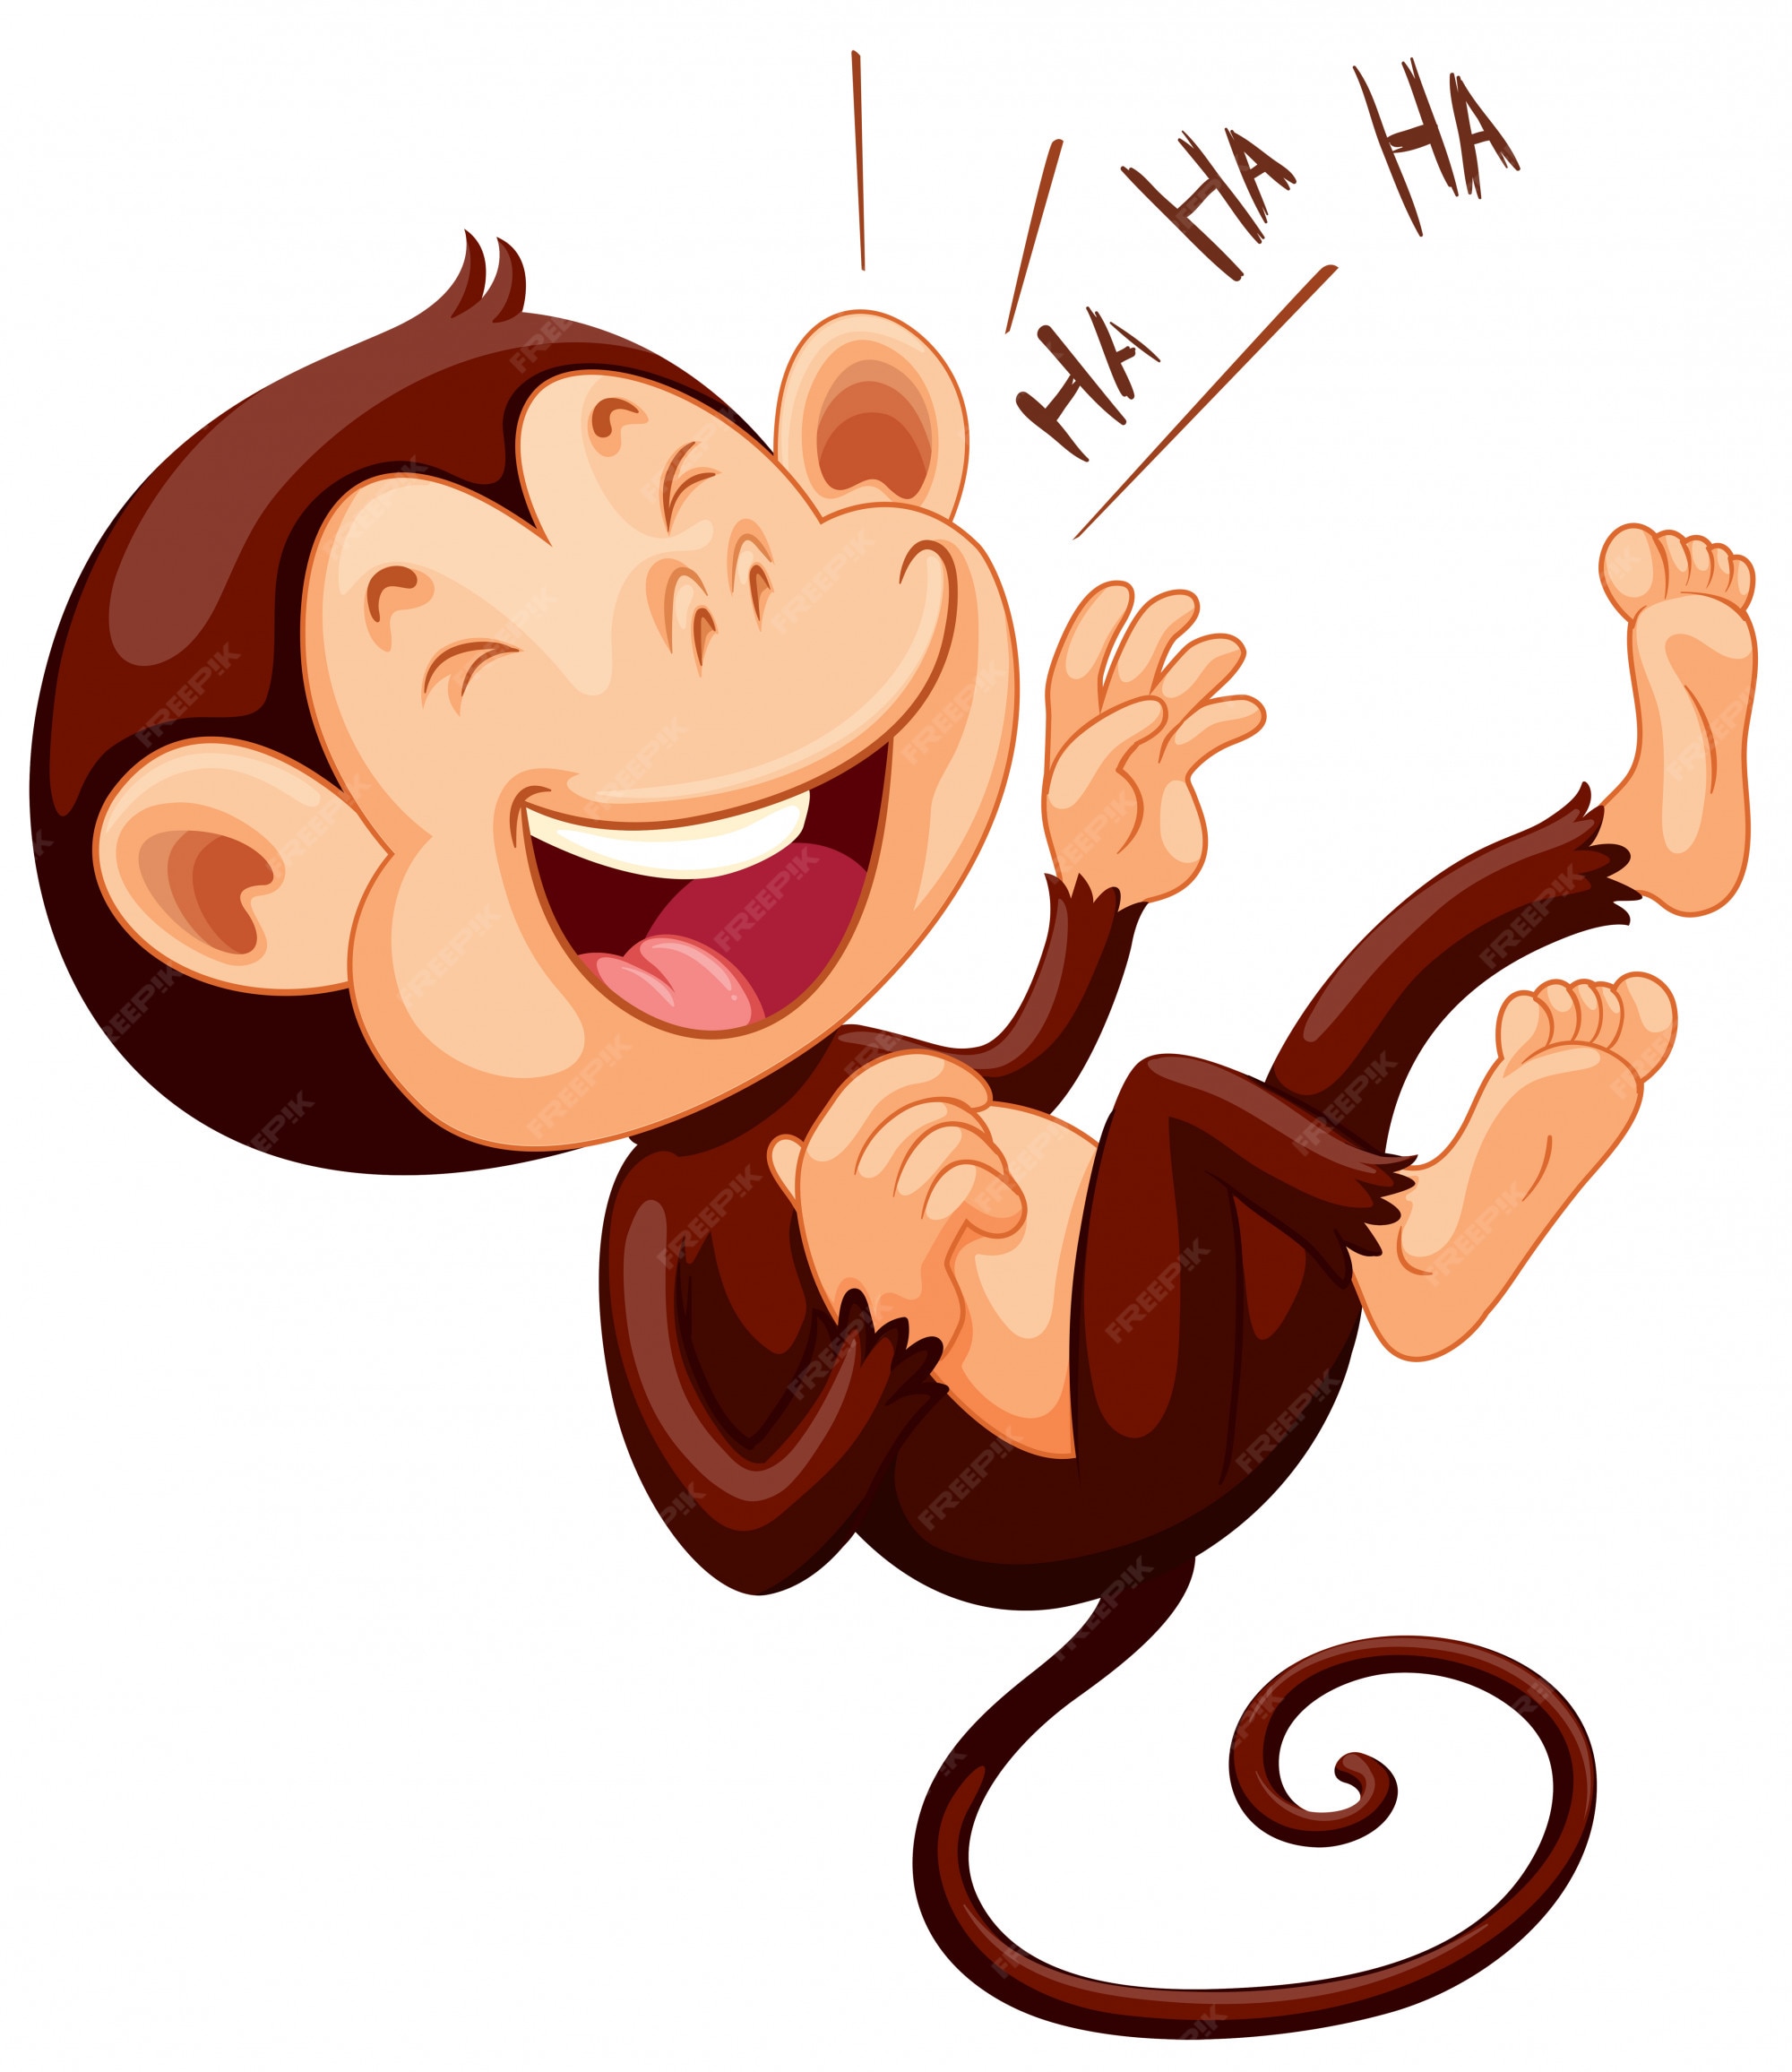 Laughing Monkey Images - Free Download on Freepik